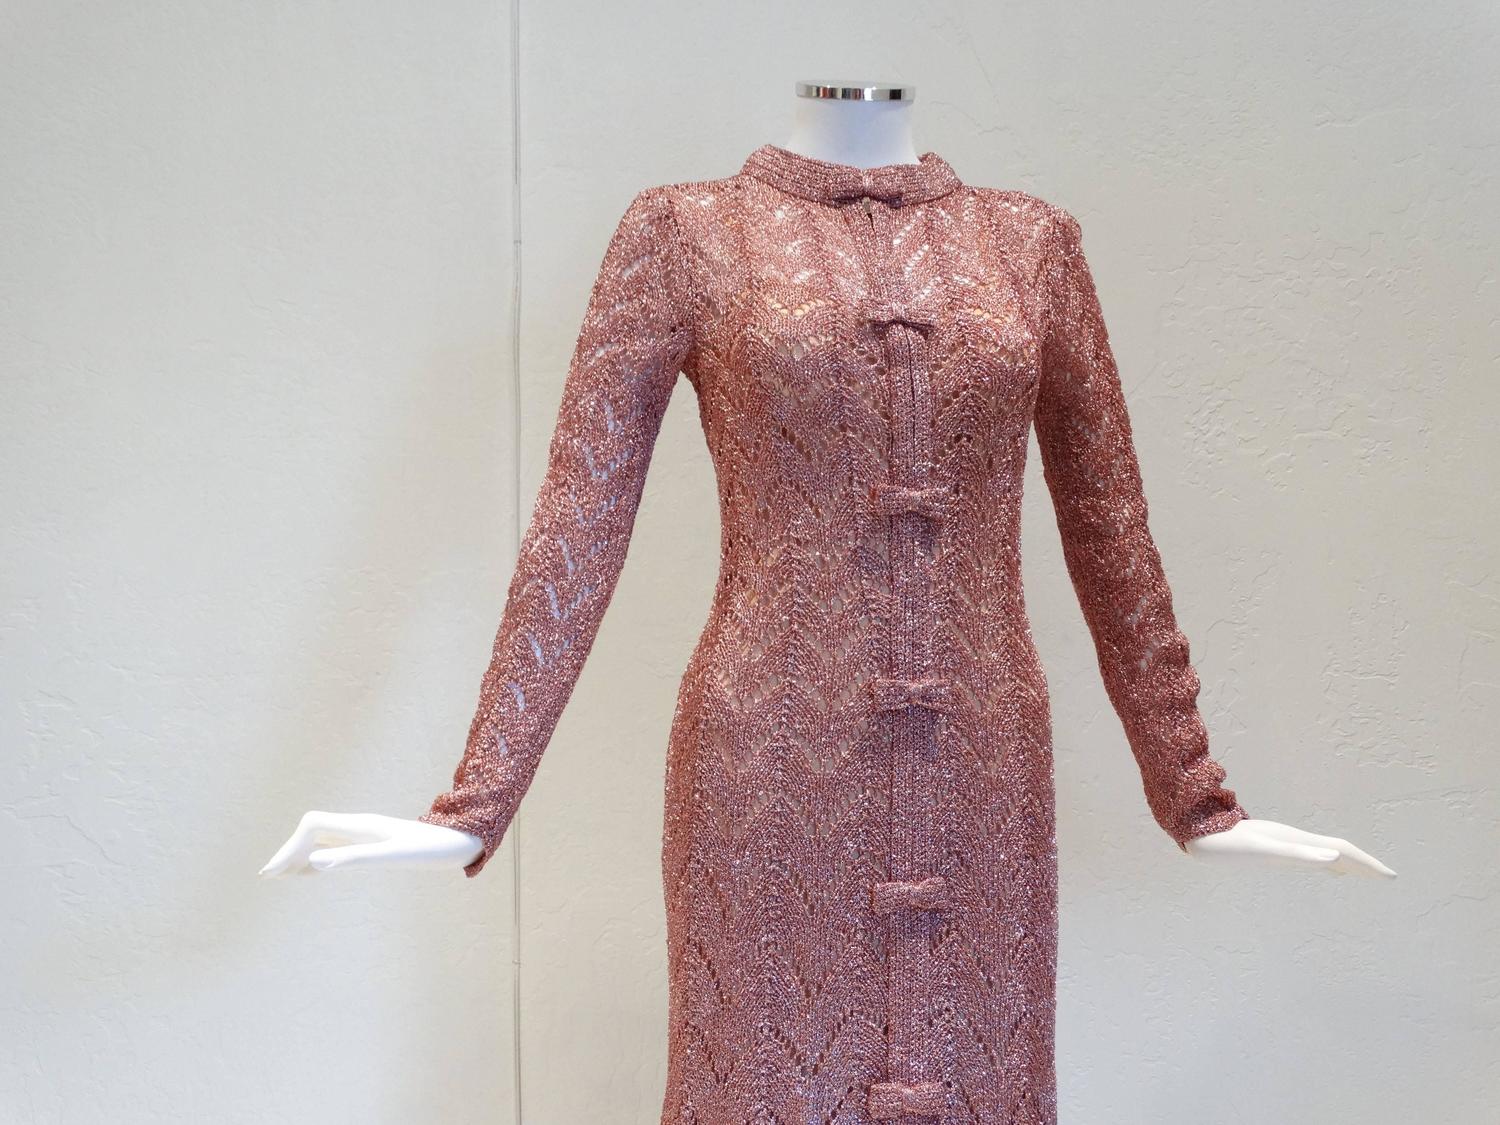 Metallic Crochet Dress - Oscar Fashion Review